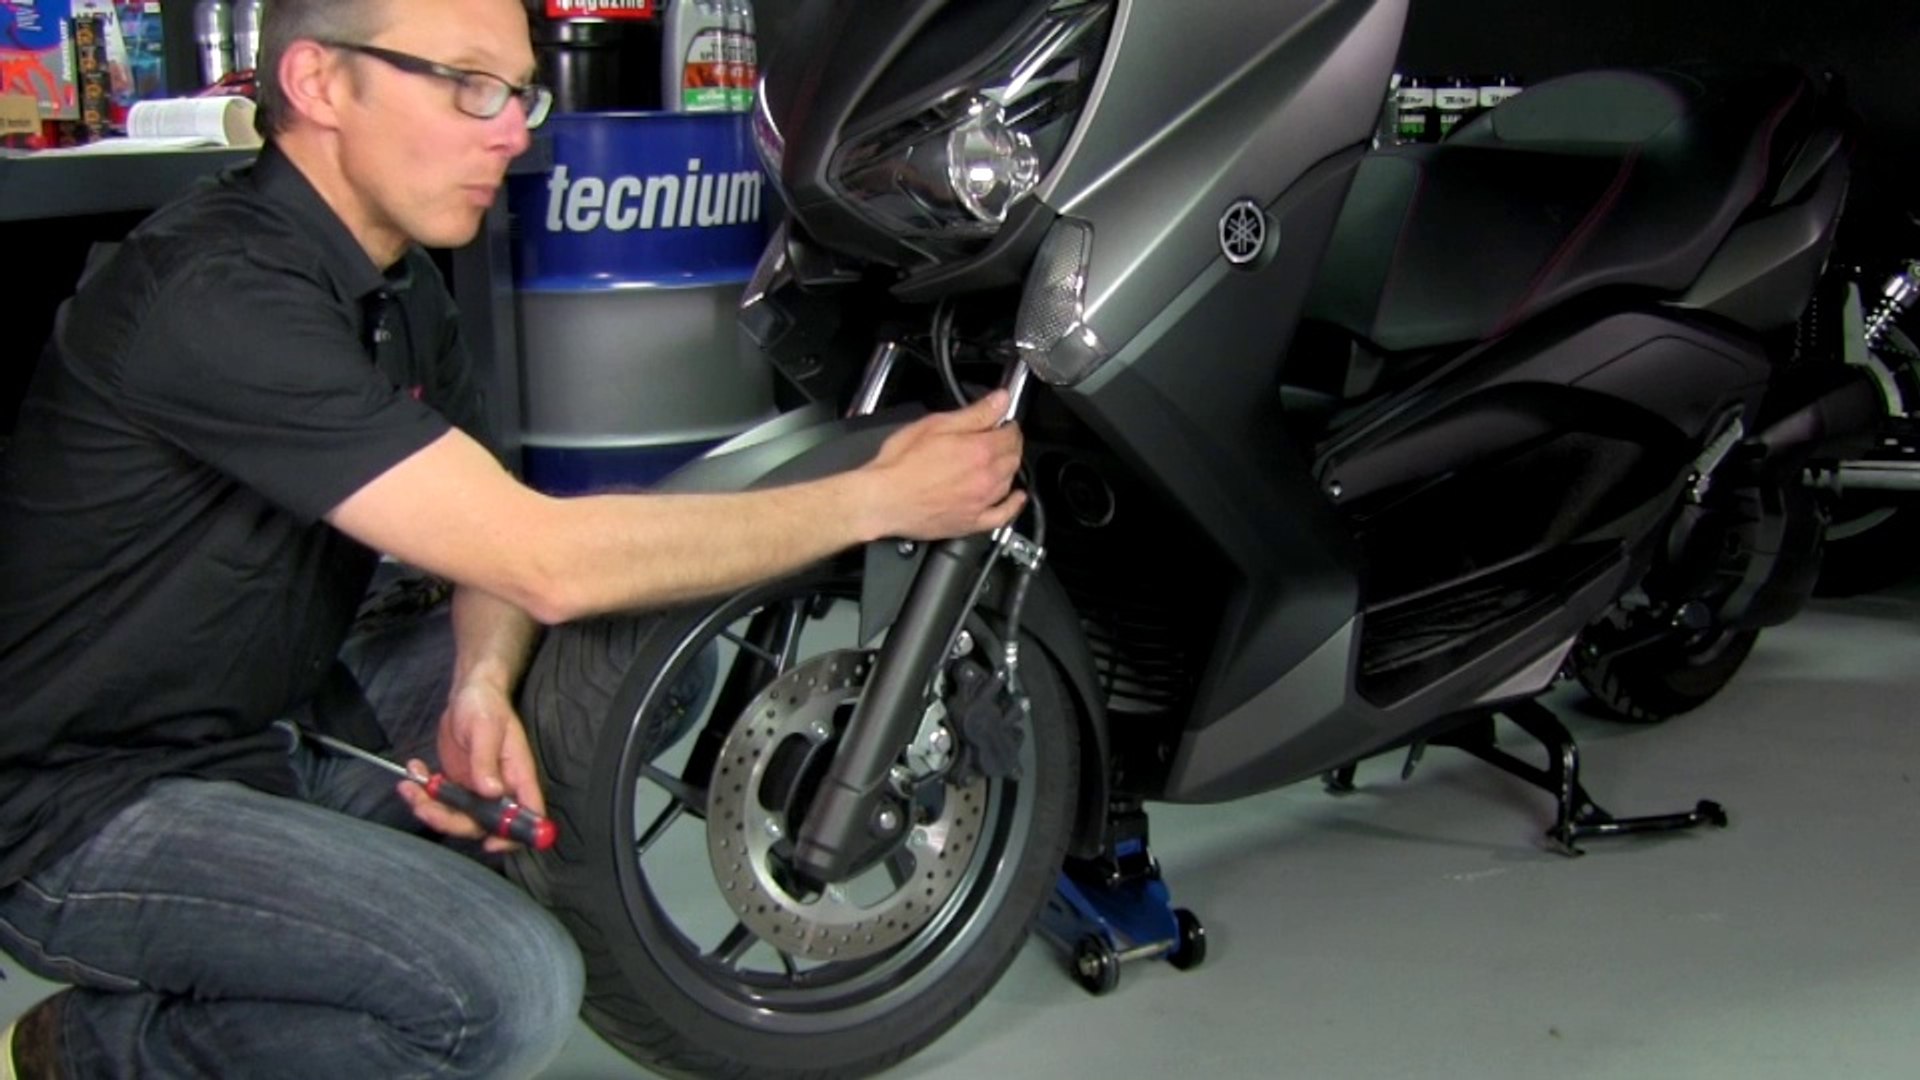 Comment changer son amortisseur moto - Tuto mécanique moto